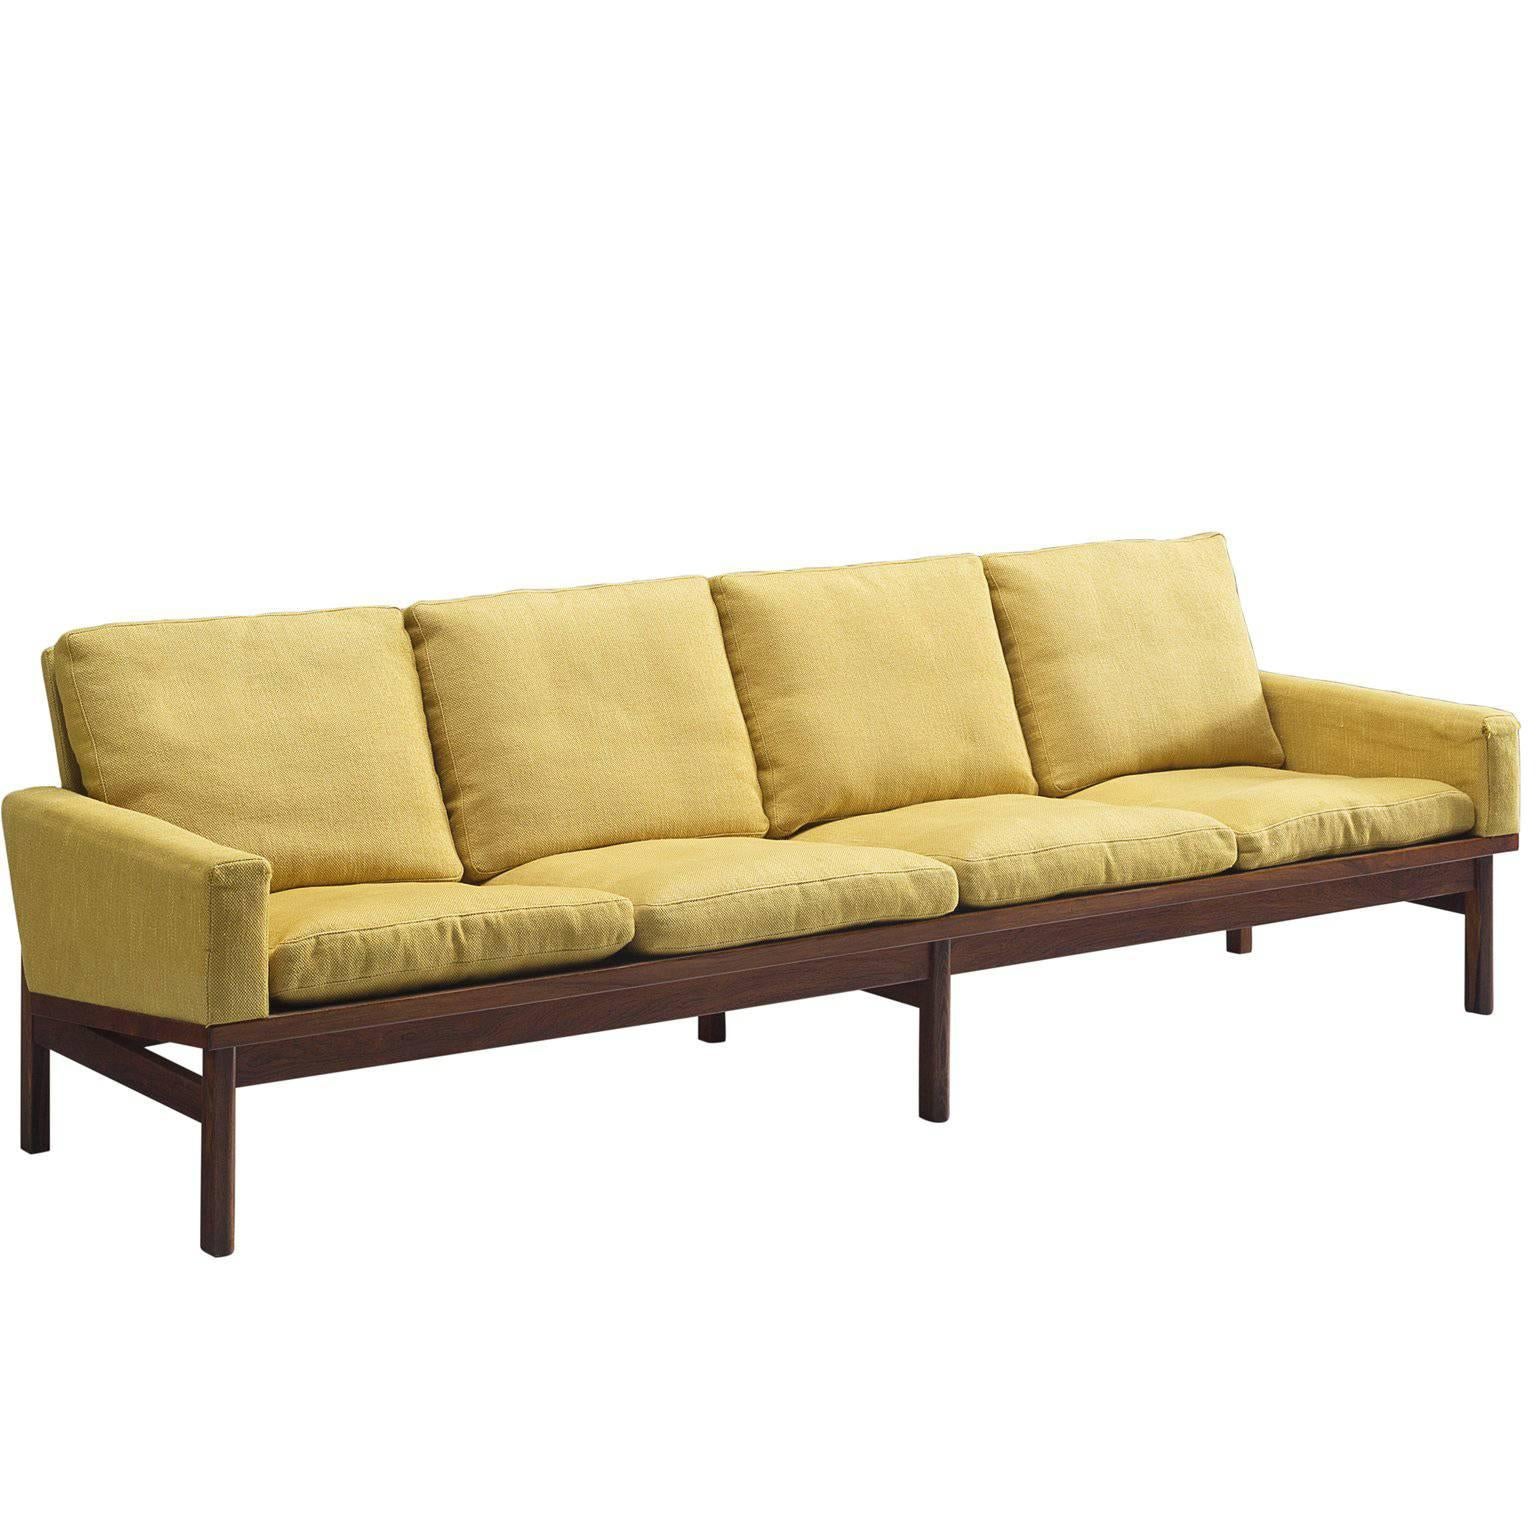 Danish Four Seat Sofa in Yellow Fabric